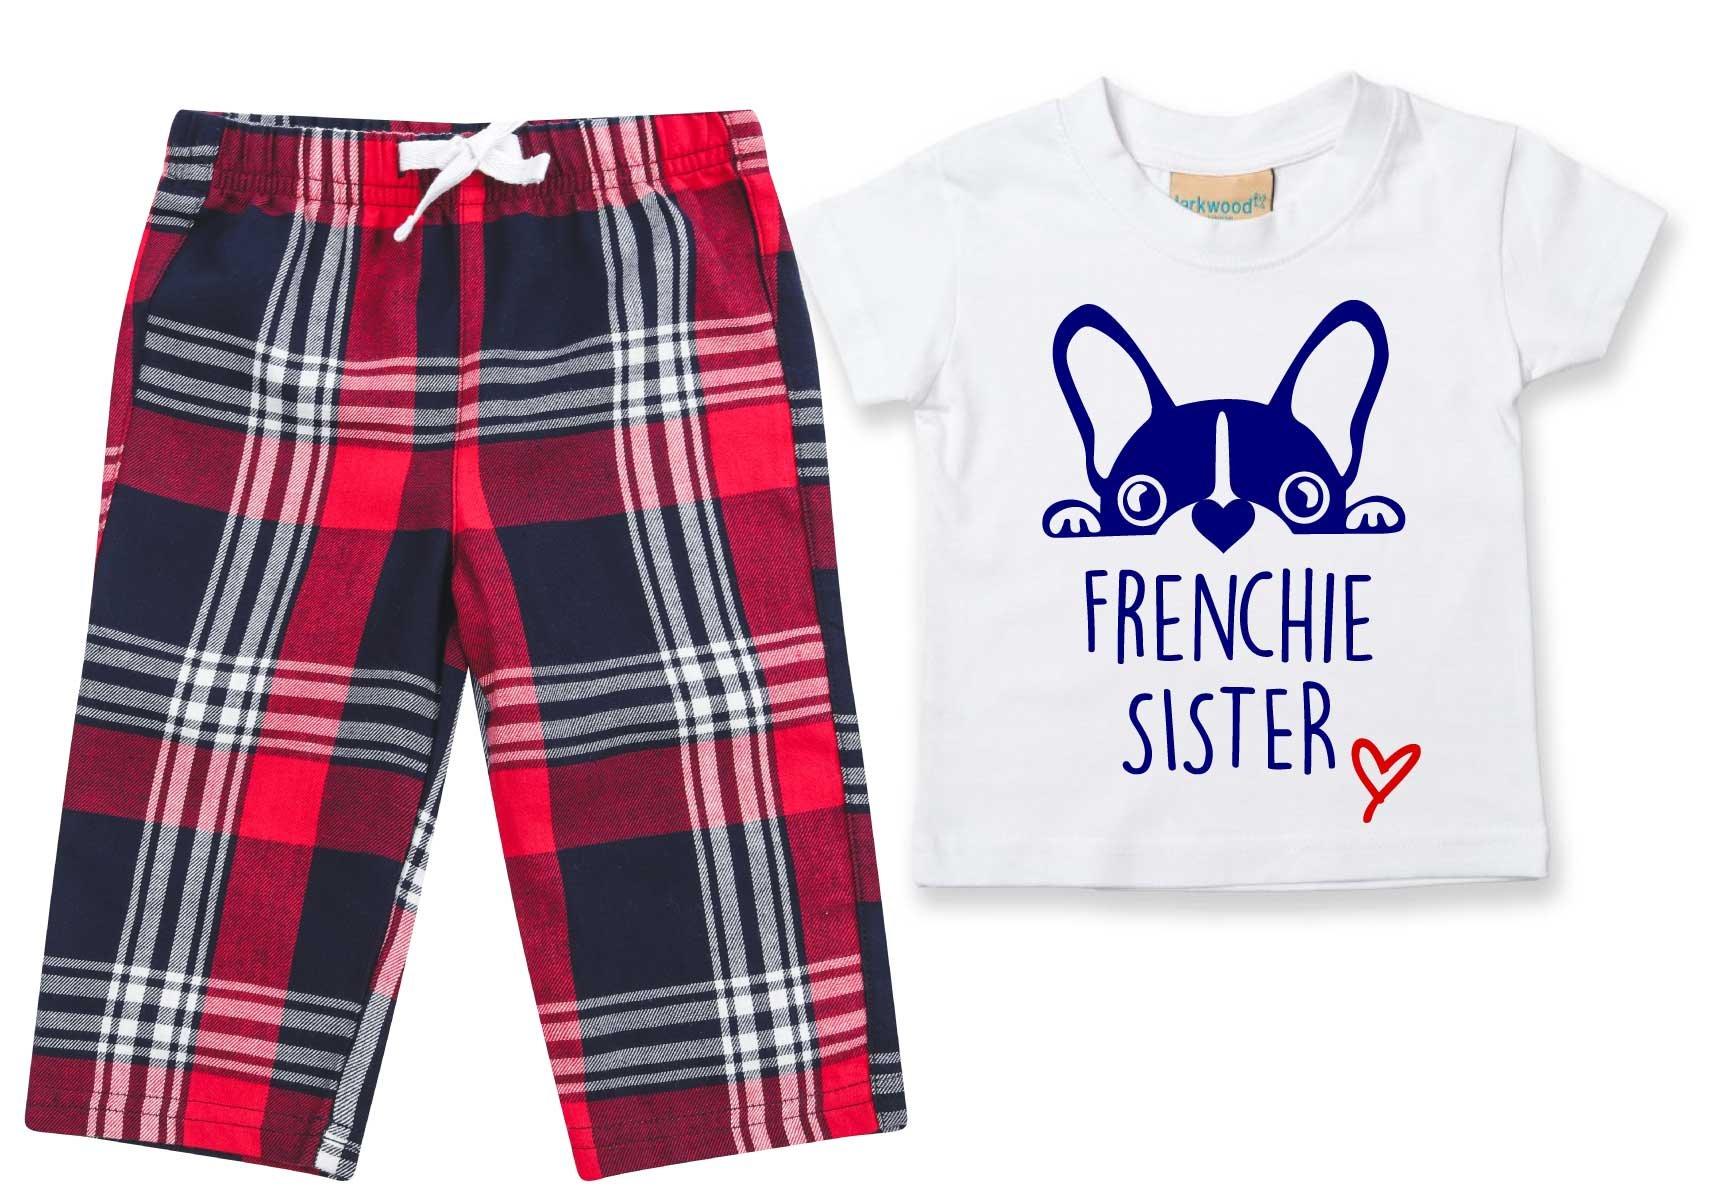 Пижамы Frenchie Sister, детские брюки в клетку, пижамный комплект с французским бульдогом 60 SECOND MAKEOVER, красный георгина декоративная тартан